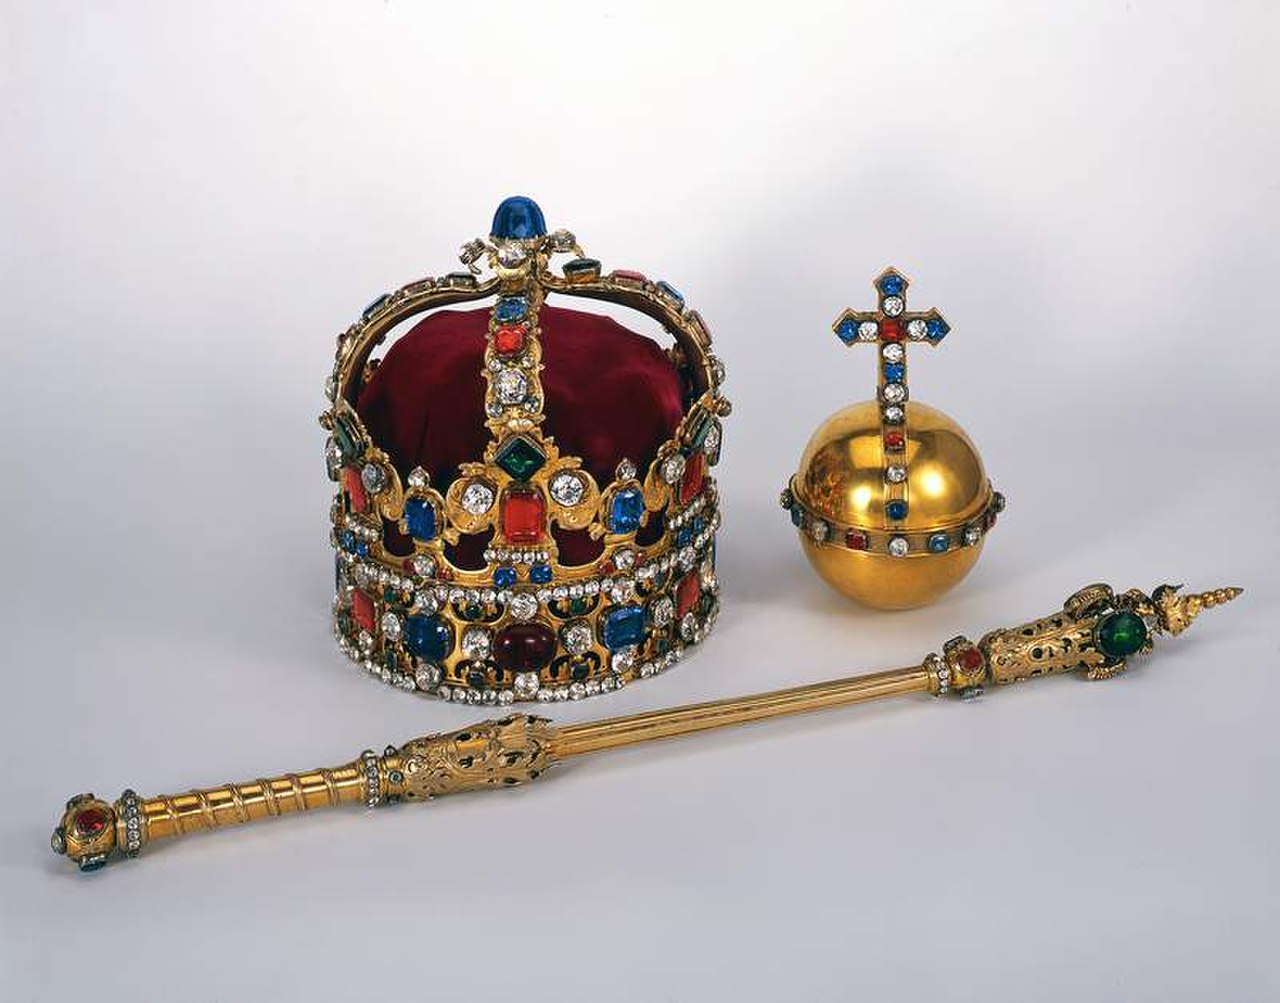 Императорская корона, скипетр и держава Российской империи